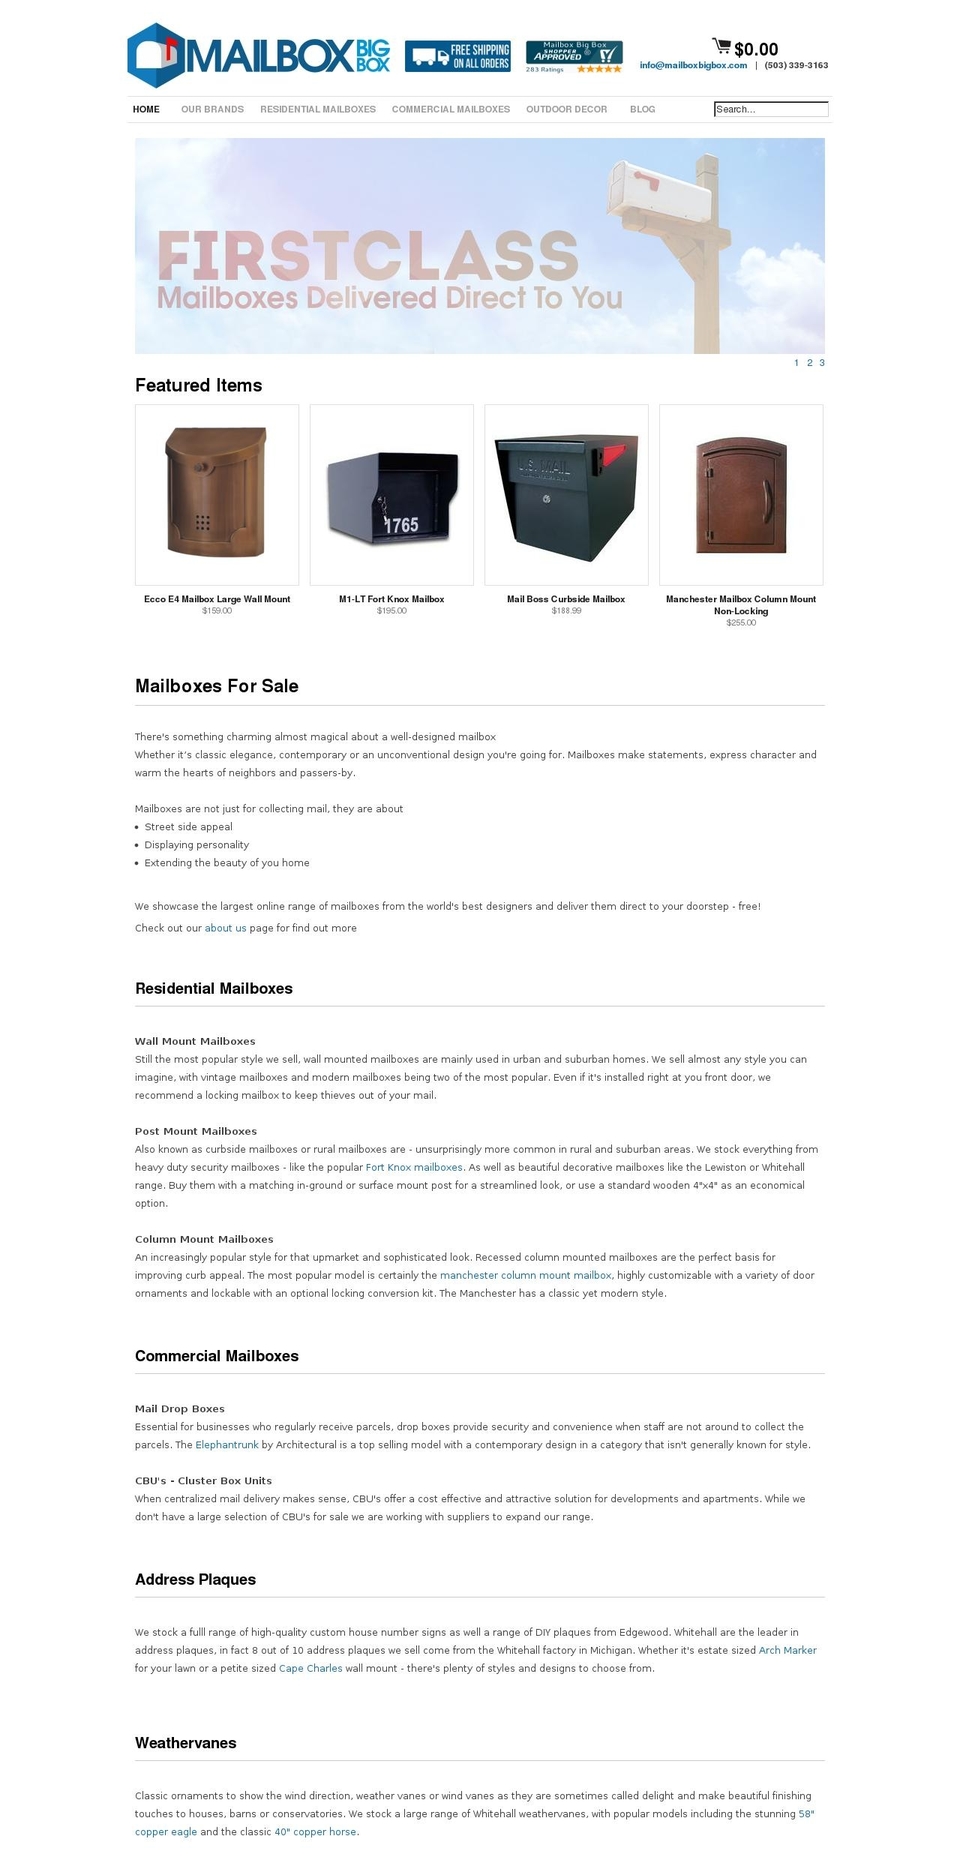 mailboxbigbox.com shopify website screenshot